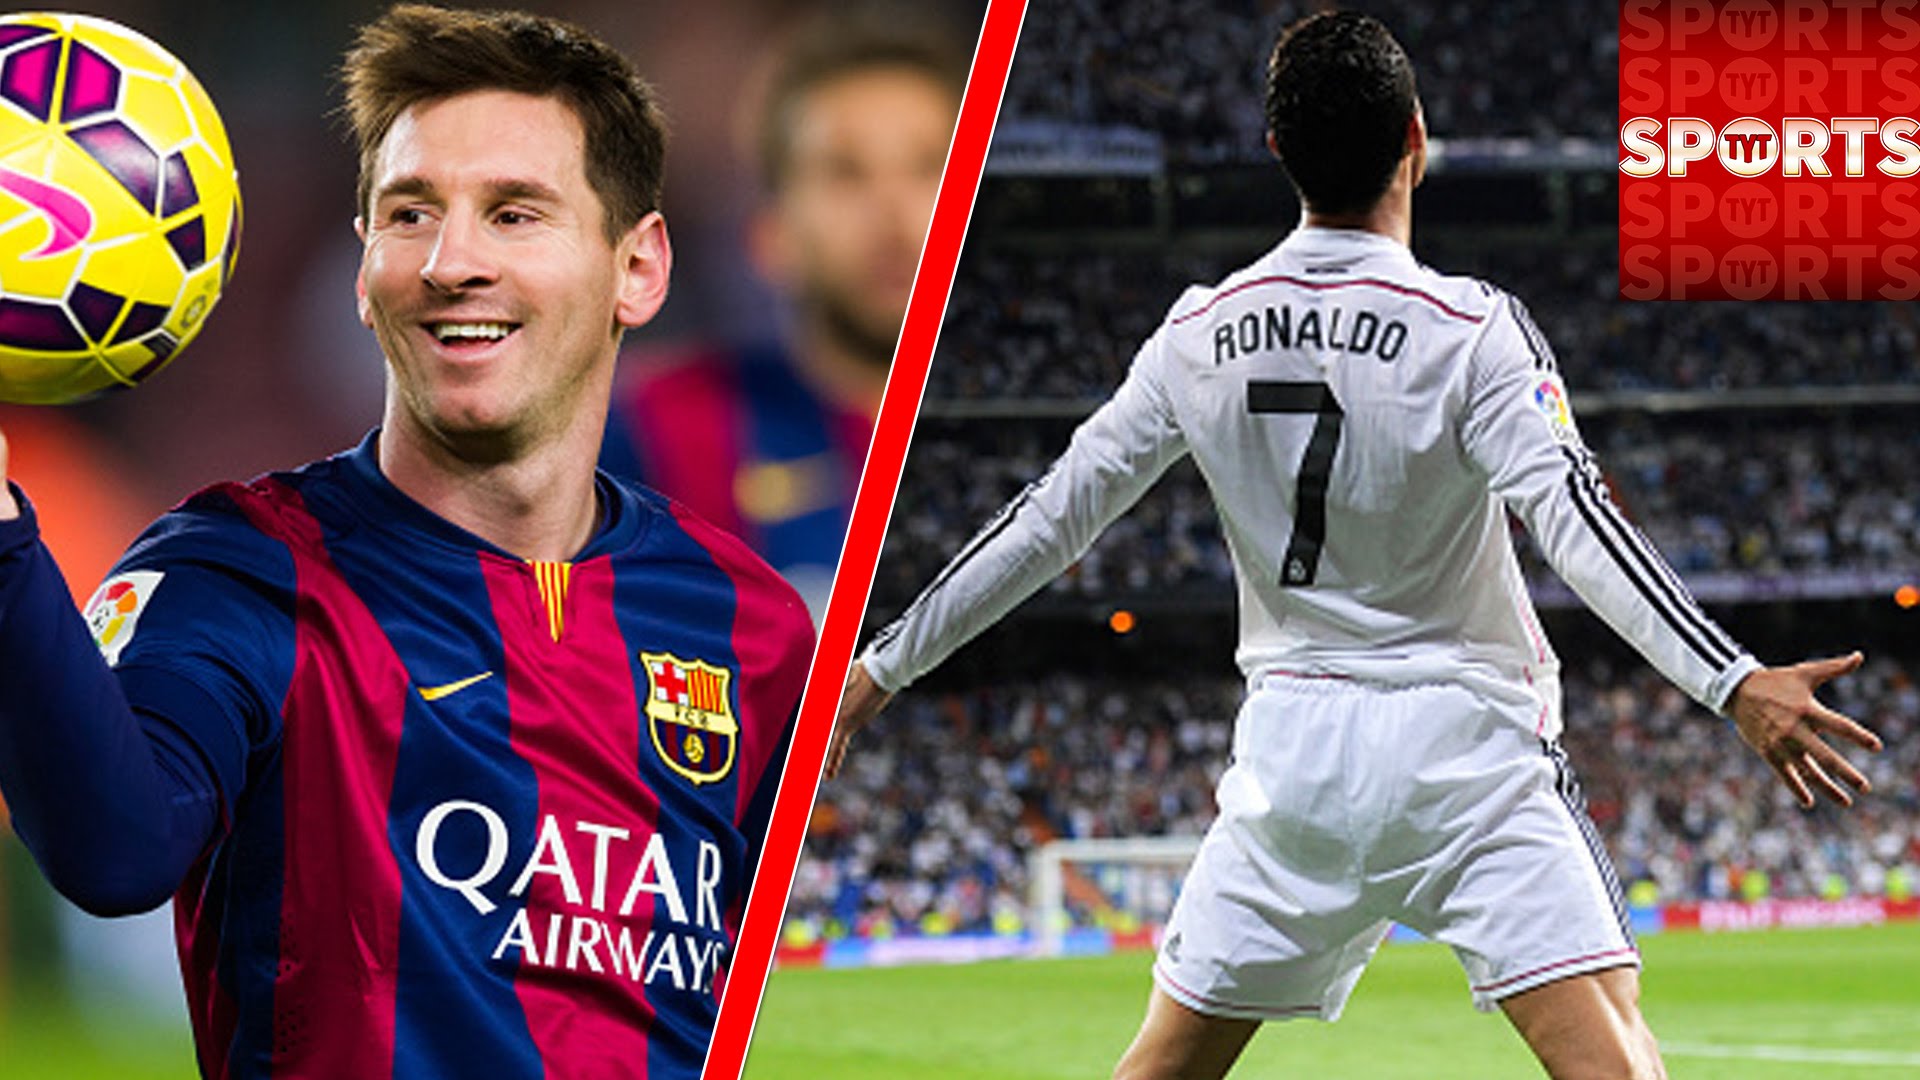 sr4 01092015 -Ronaldo will score more goals than Messi in new season